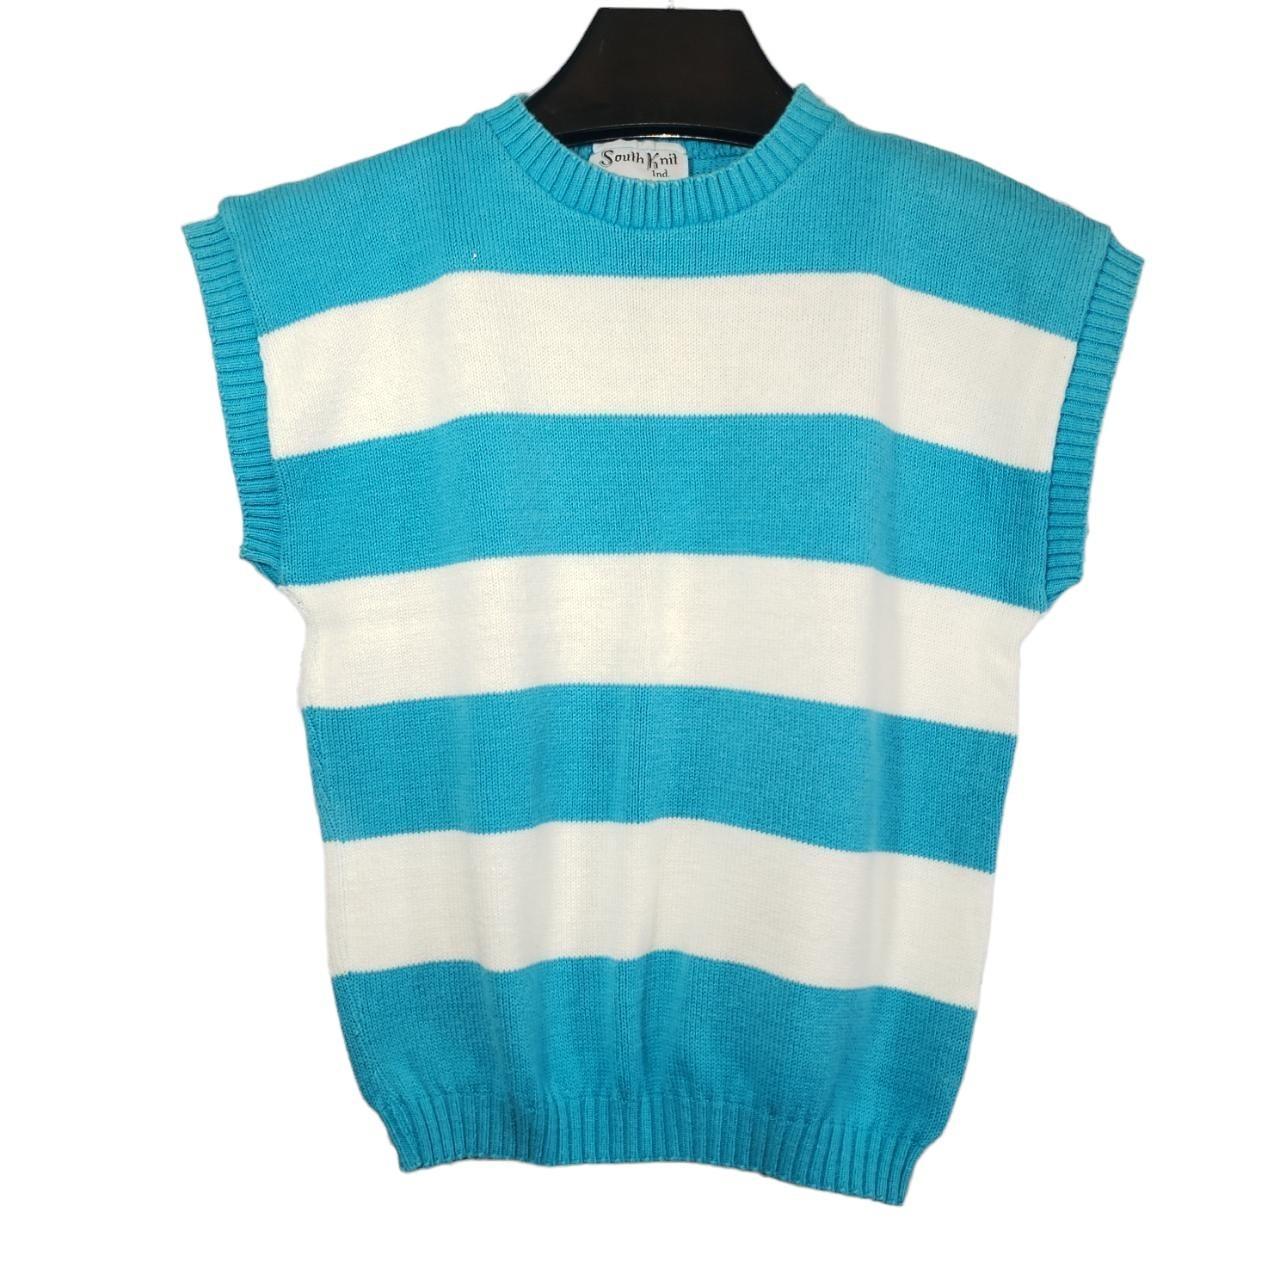 Vintage (1980s/1990s) striped knit short sleeve... - Depop